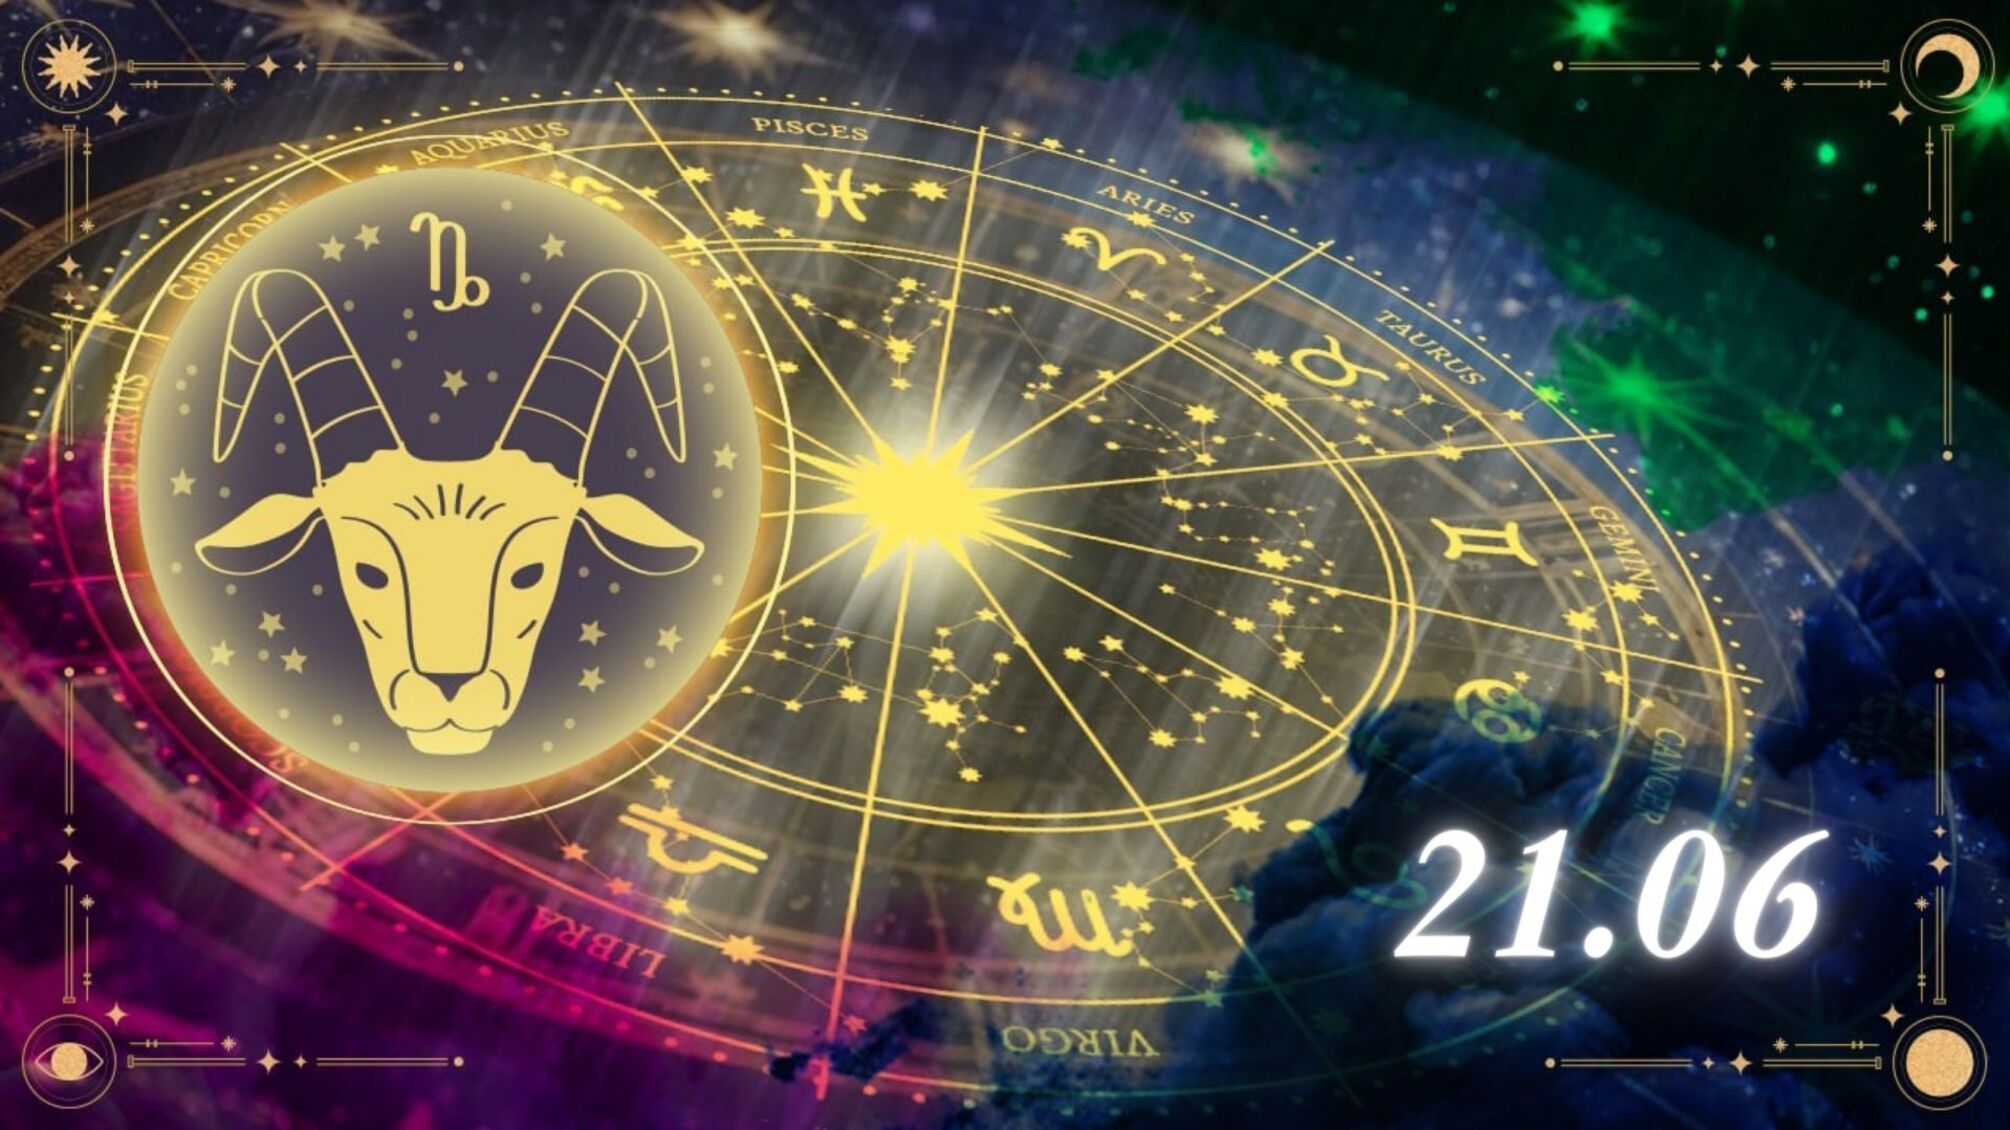 Козероги, будьте готовы к неожиданностям: гороскоп на 21 июня